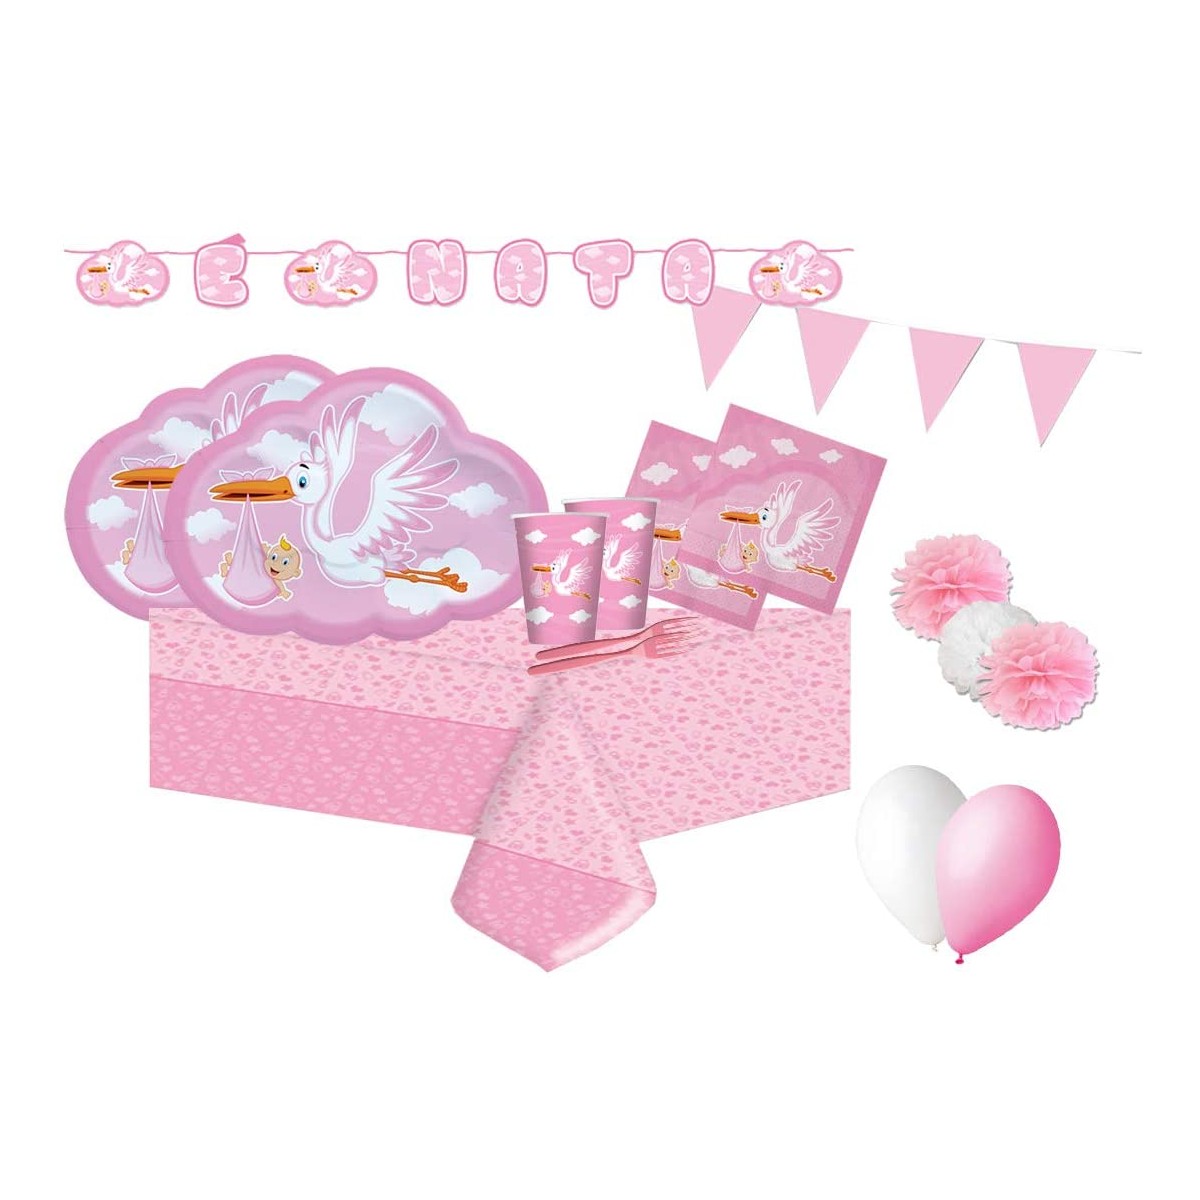 Kit per 16 invitati cicogna rosa, decorazioni nascita bambina